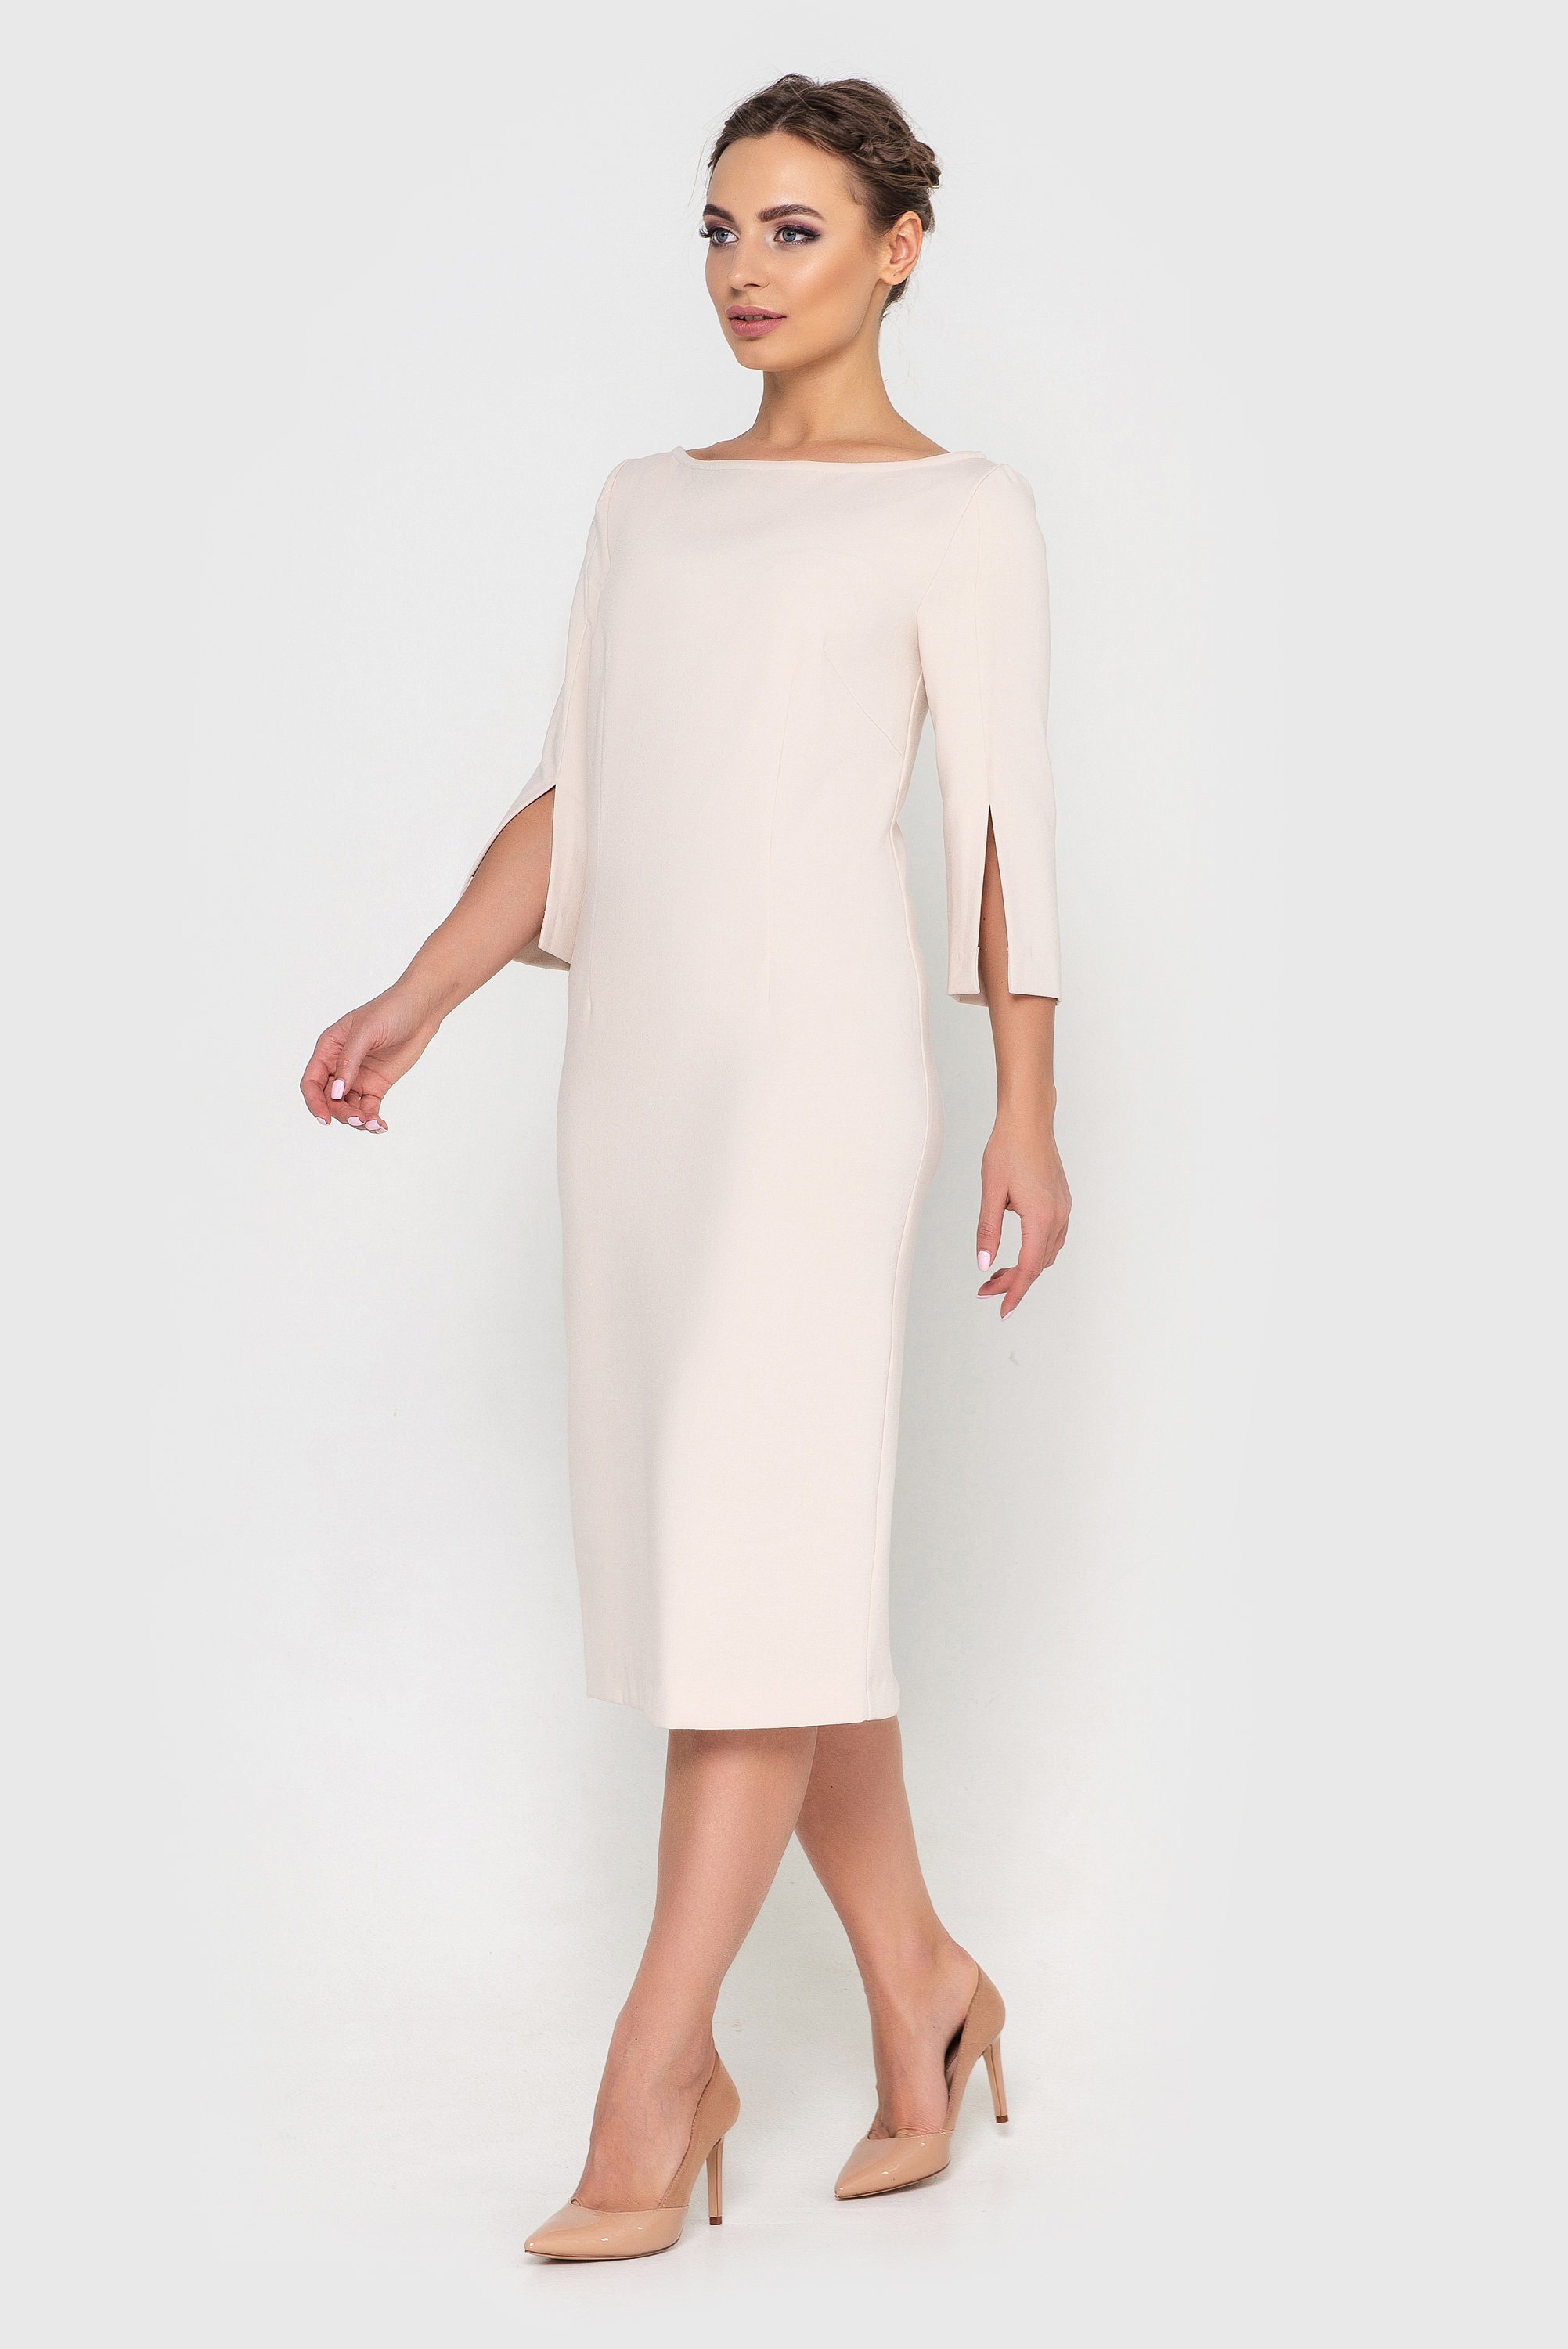 White short cocktail dress Midi dresses for women Simple | Etsy